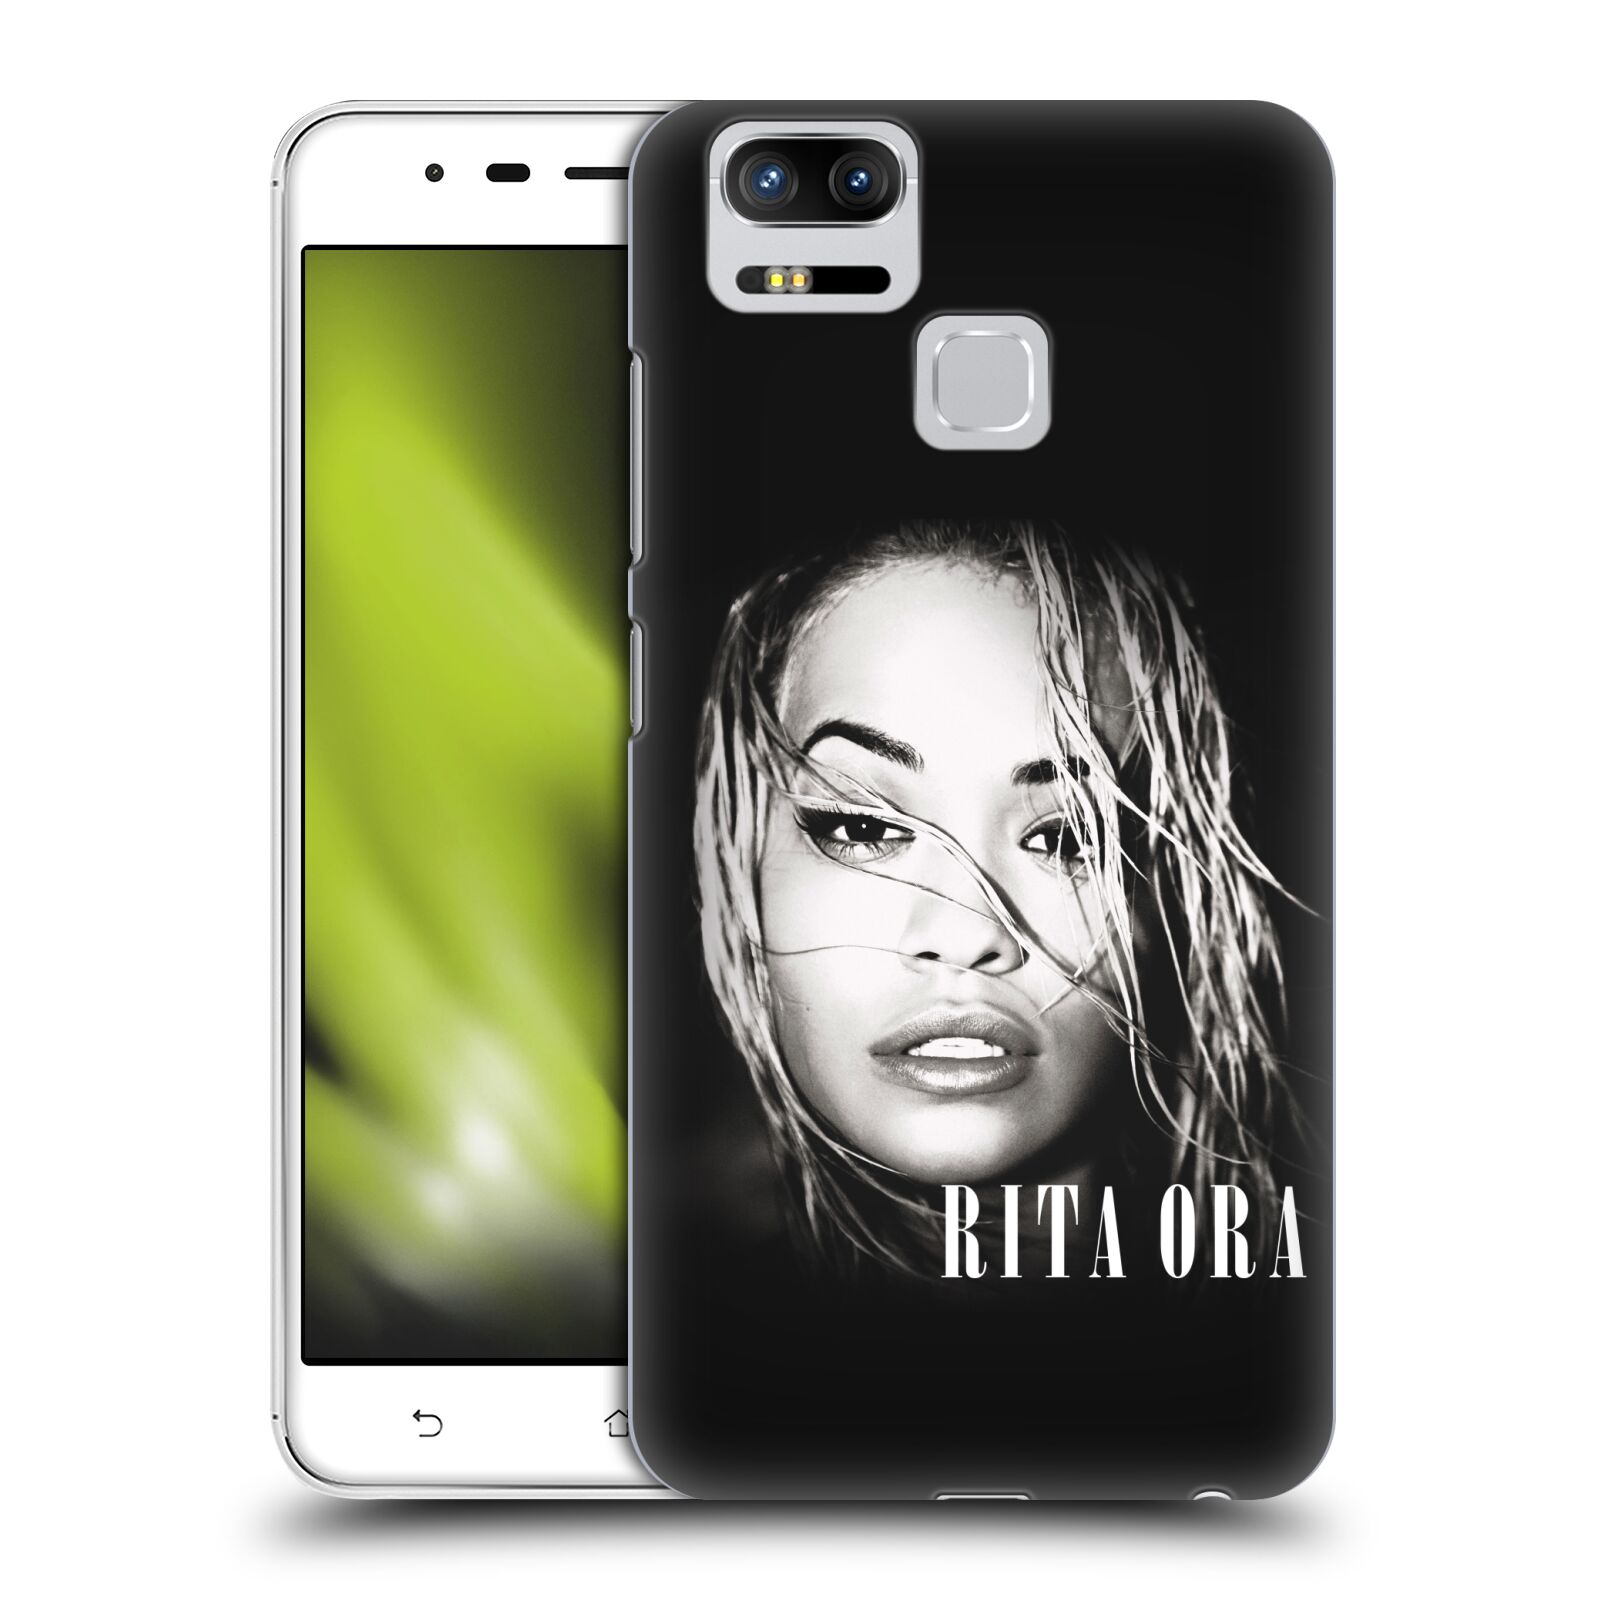 HEAD CASE plastový obal na mobil Asus Zenfone 3 Zoom ZE553KL zpěvačka Rita Ora foto tvář